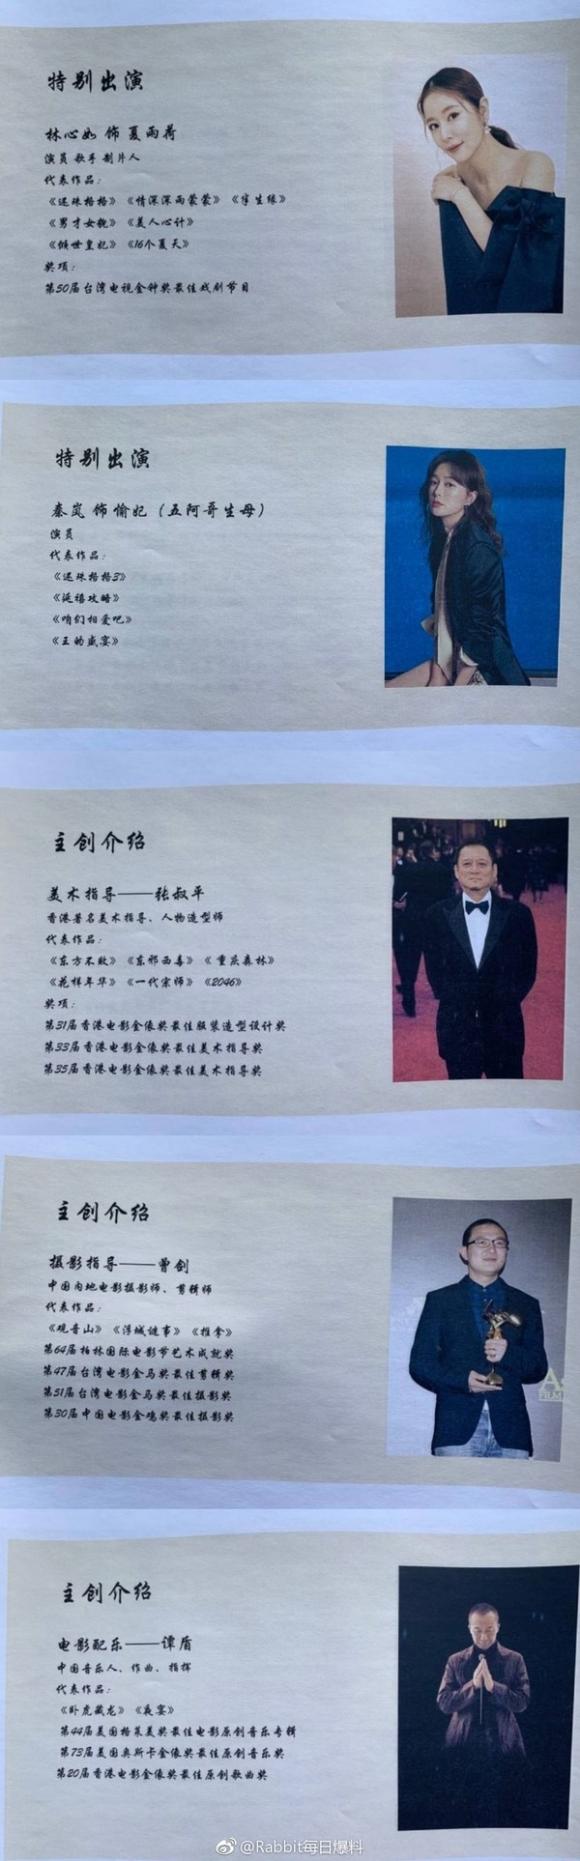 Lâm Tâm Như,Triệu Vy,Hoàn Châu cách cách,Tô Hữu Bằng,Hứa Khải,Hoàn Châu cách cách 2019